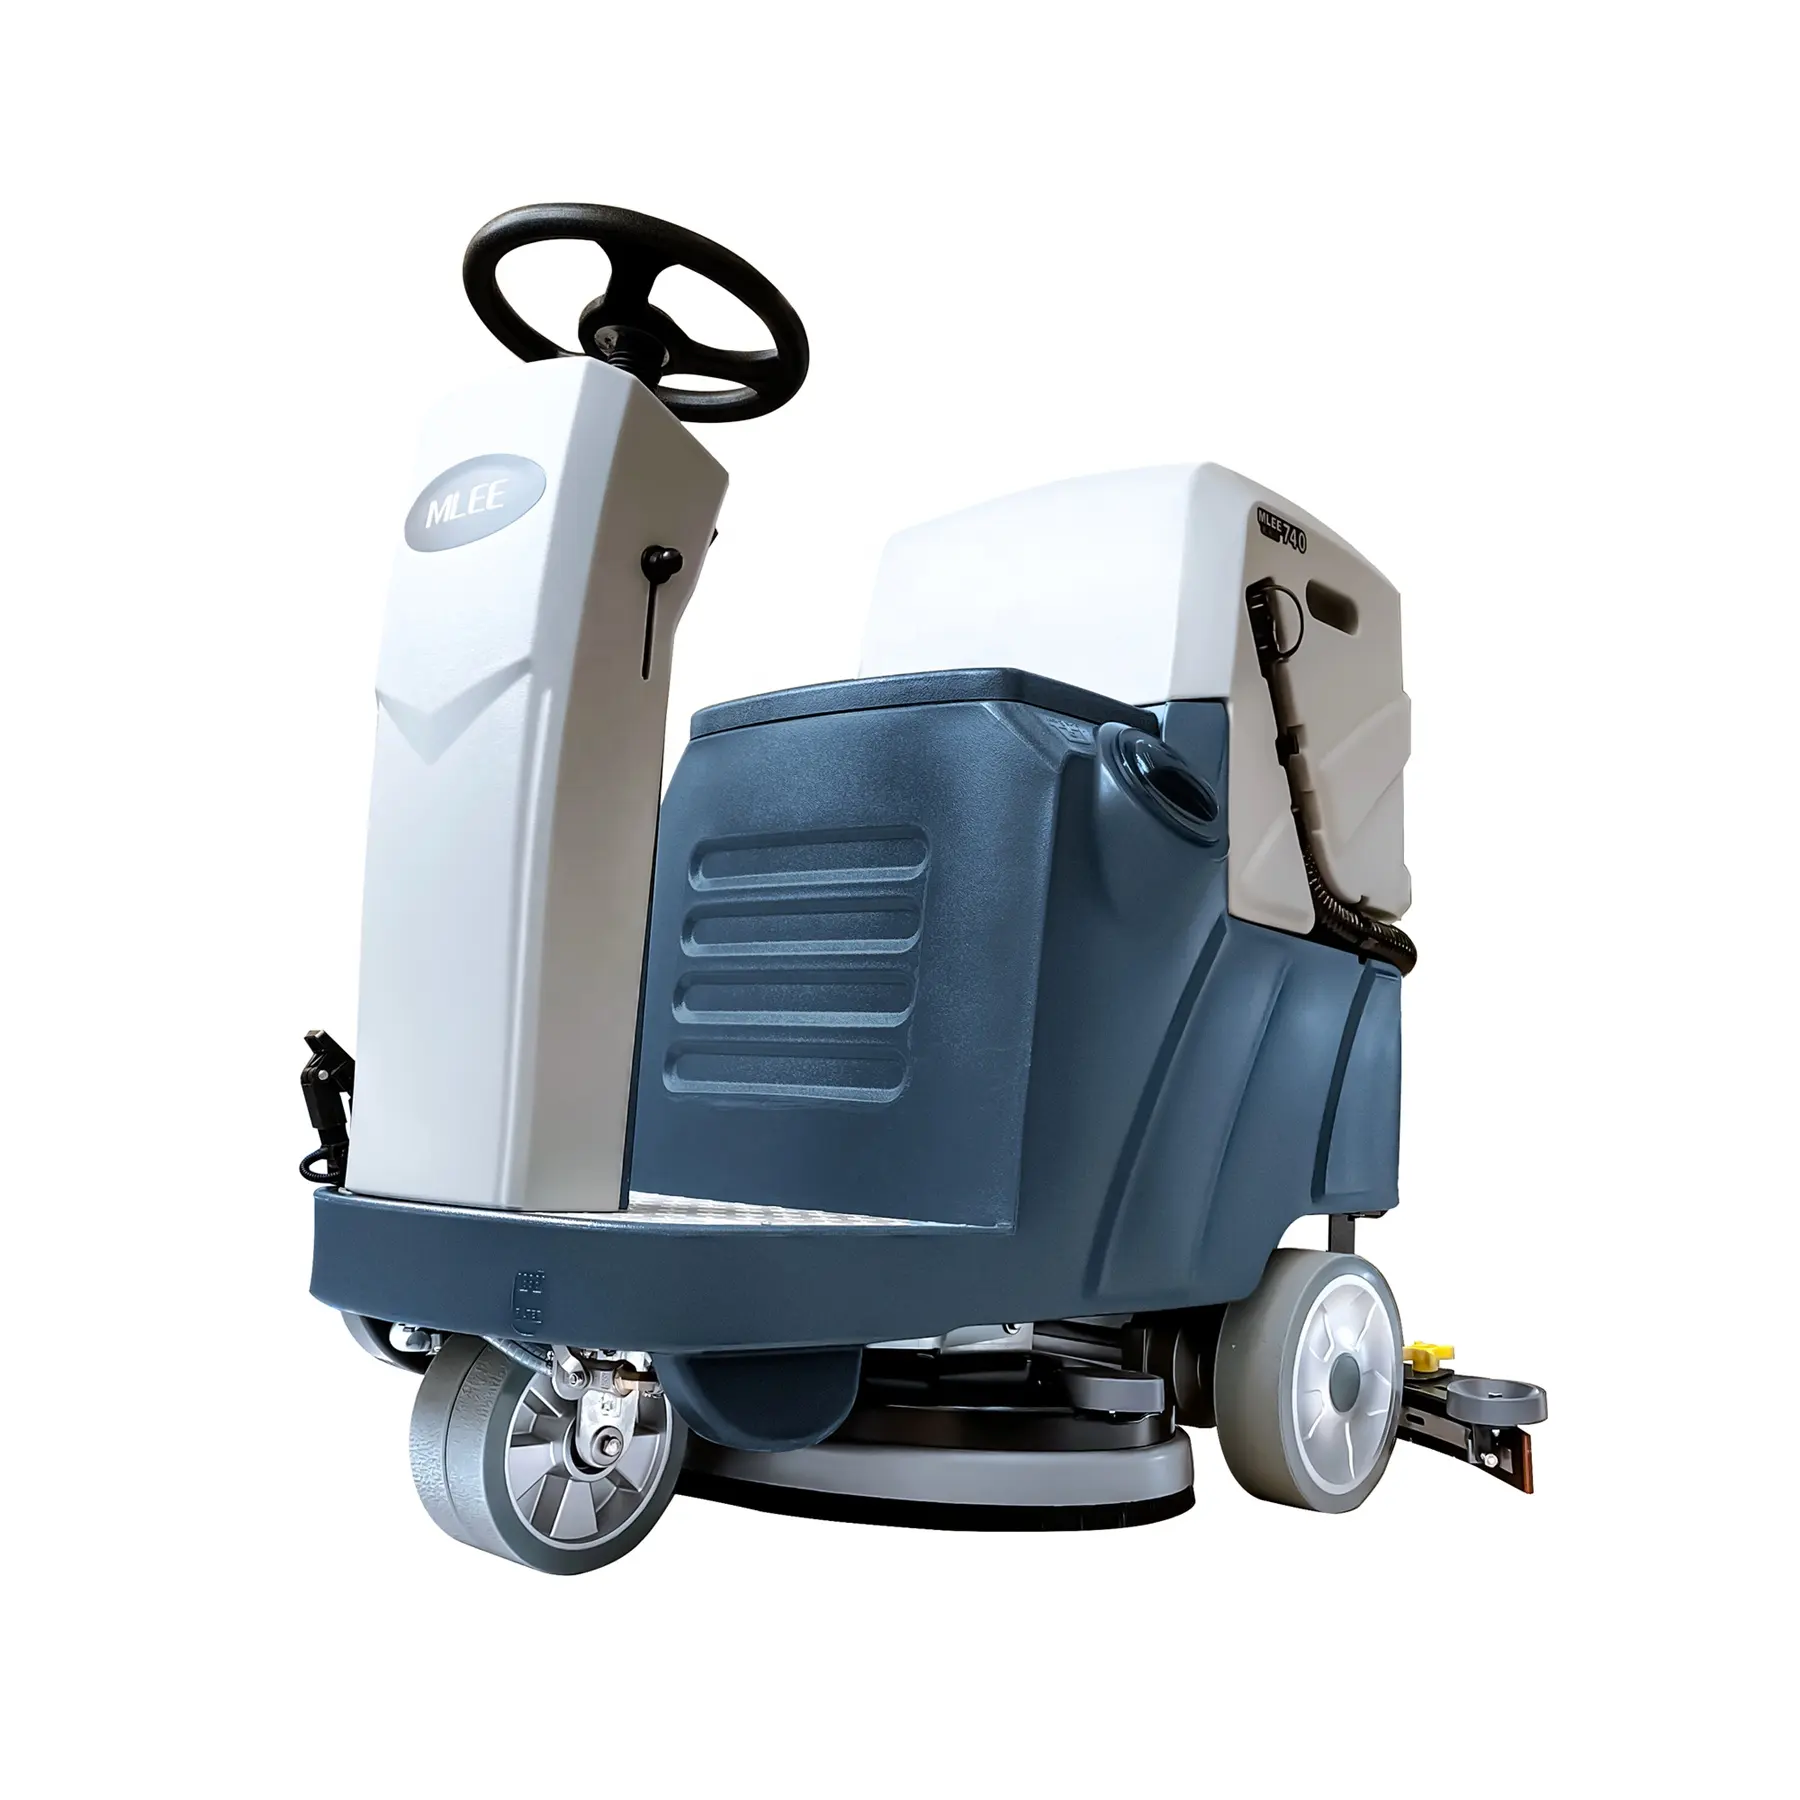 MLEE-740MINI Industriële Commerciële Reinigingsvloermachine Automatisch Rijden Op Automatische Vloerscrubber